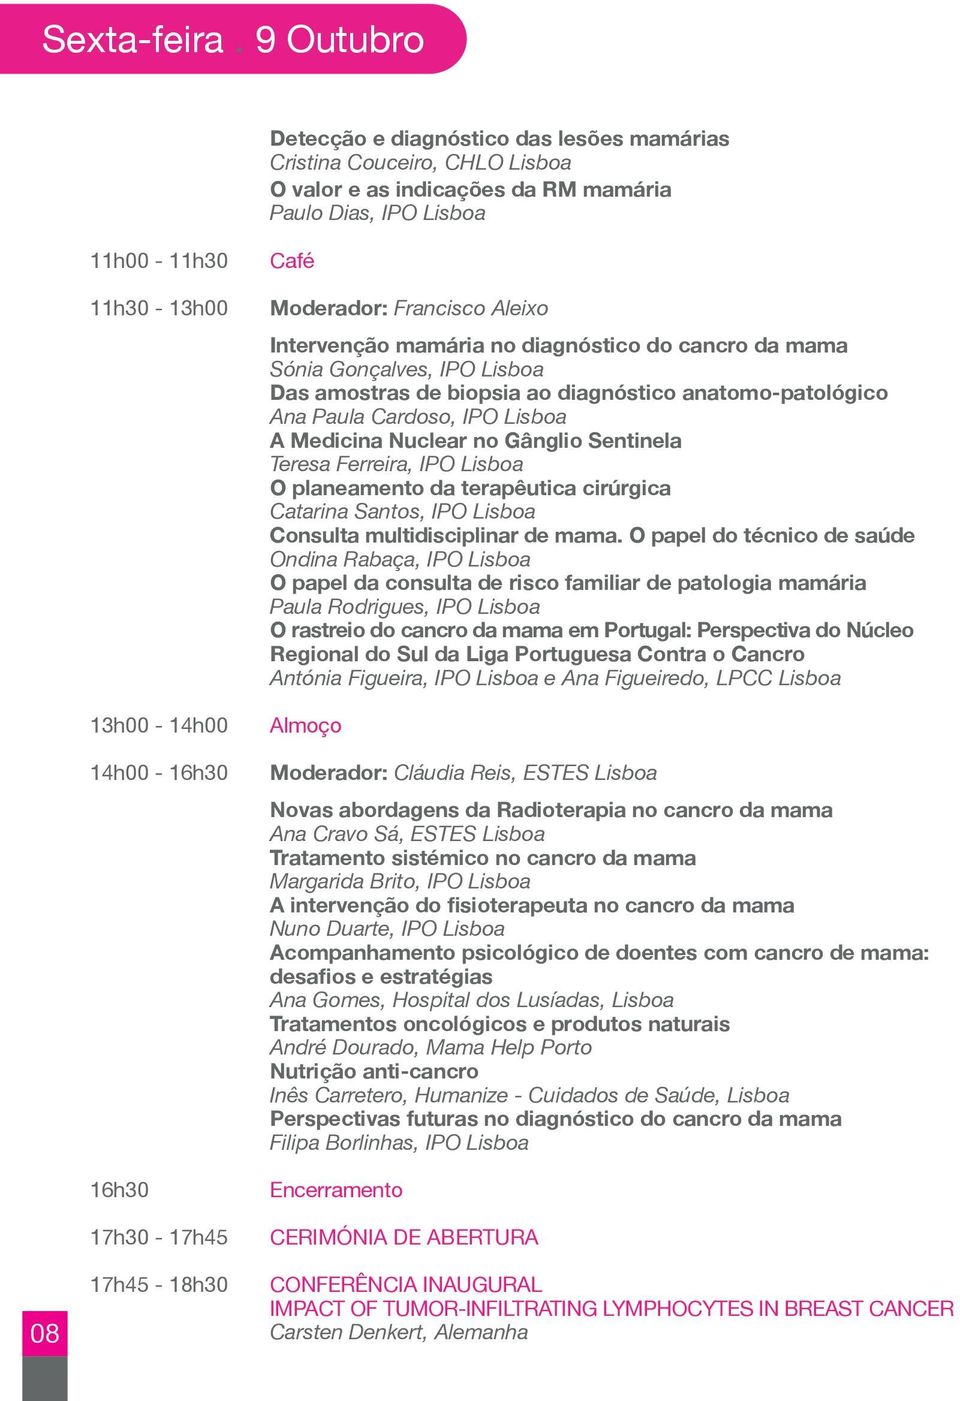 16h30 17h30-17h45 17h45-18h30 Café Moderador: Francisco Aleixo Intervenção mamária no diagnóstico do cancro da mama Sónia Gonçalves, IPO Lisboa Das amostras de biopsia ao diagnóstico